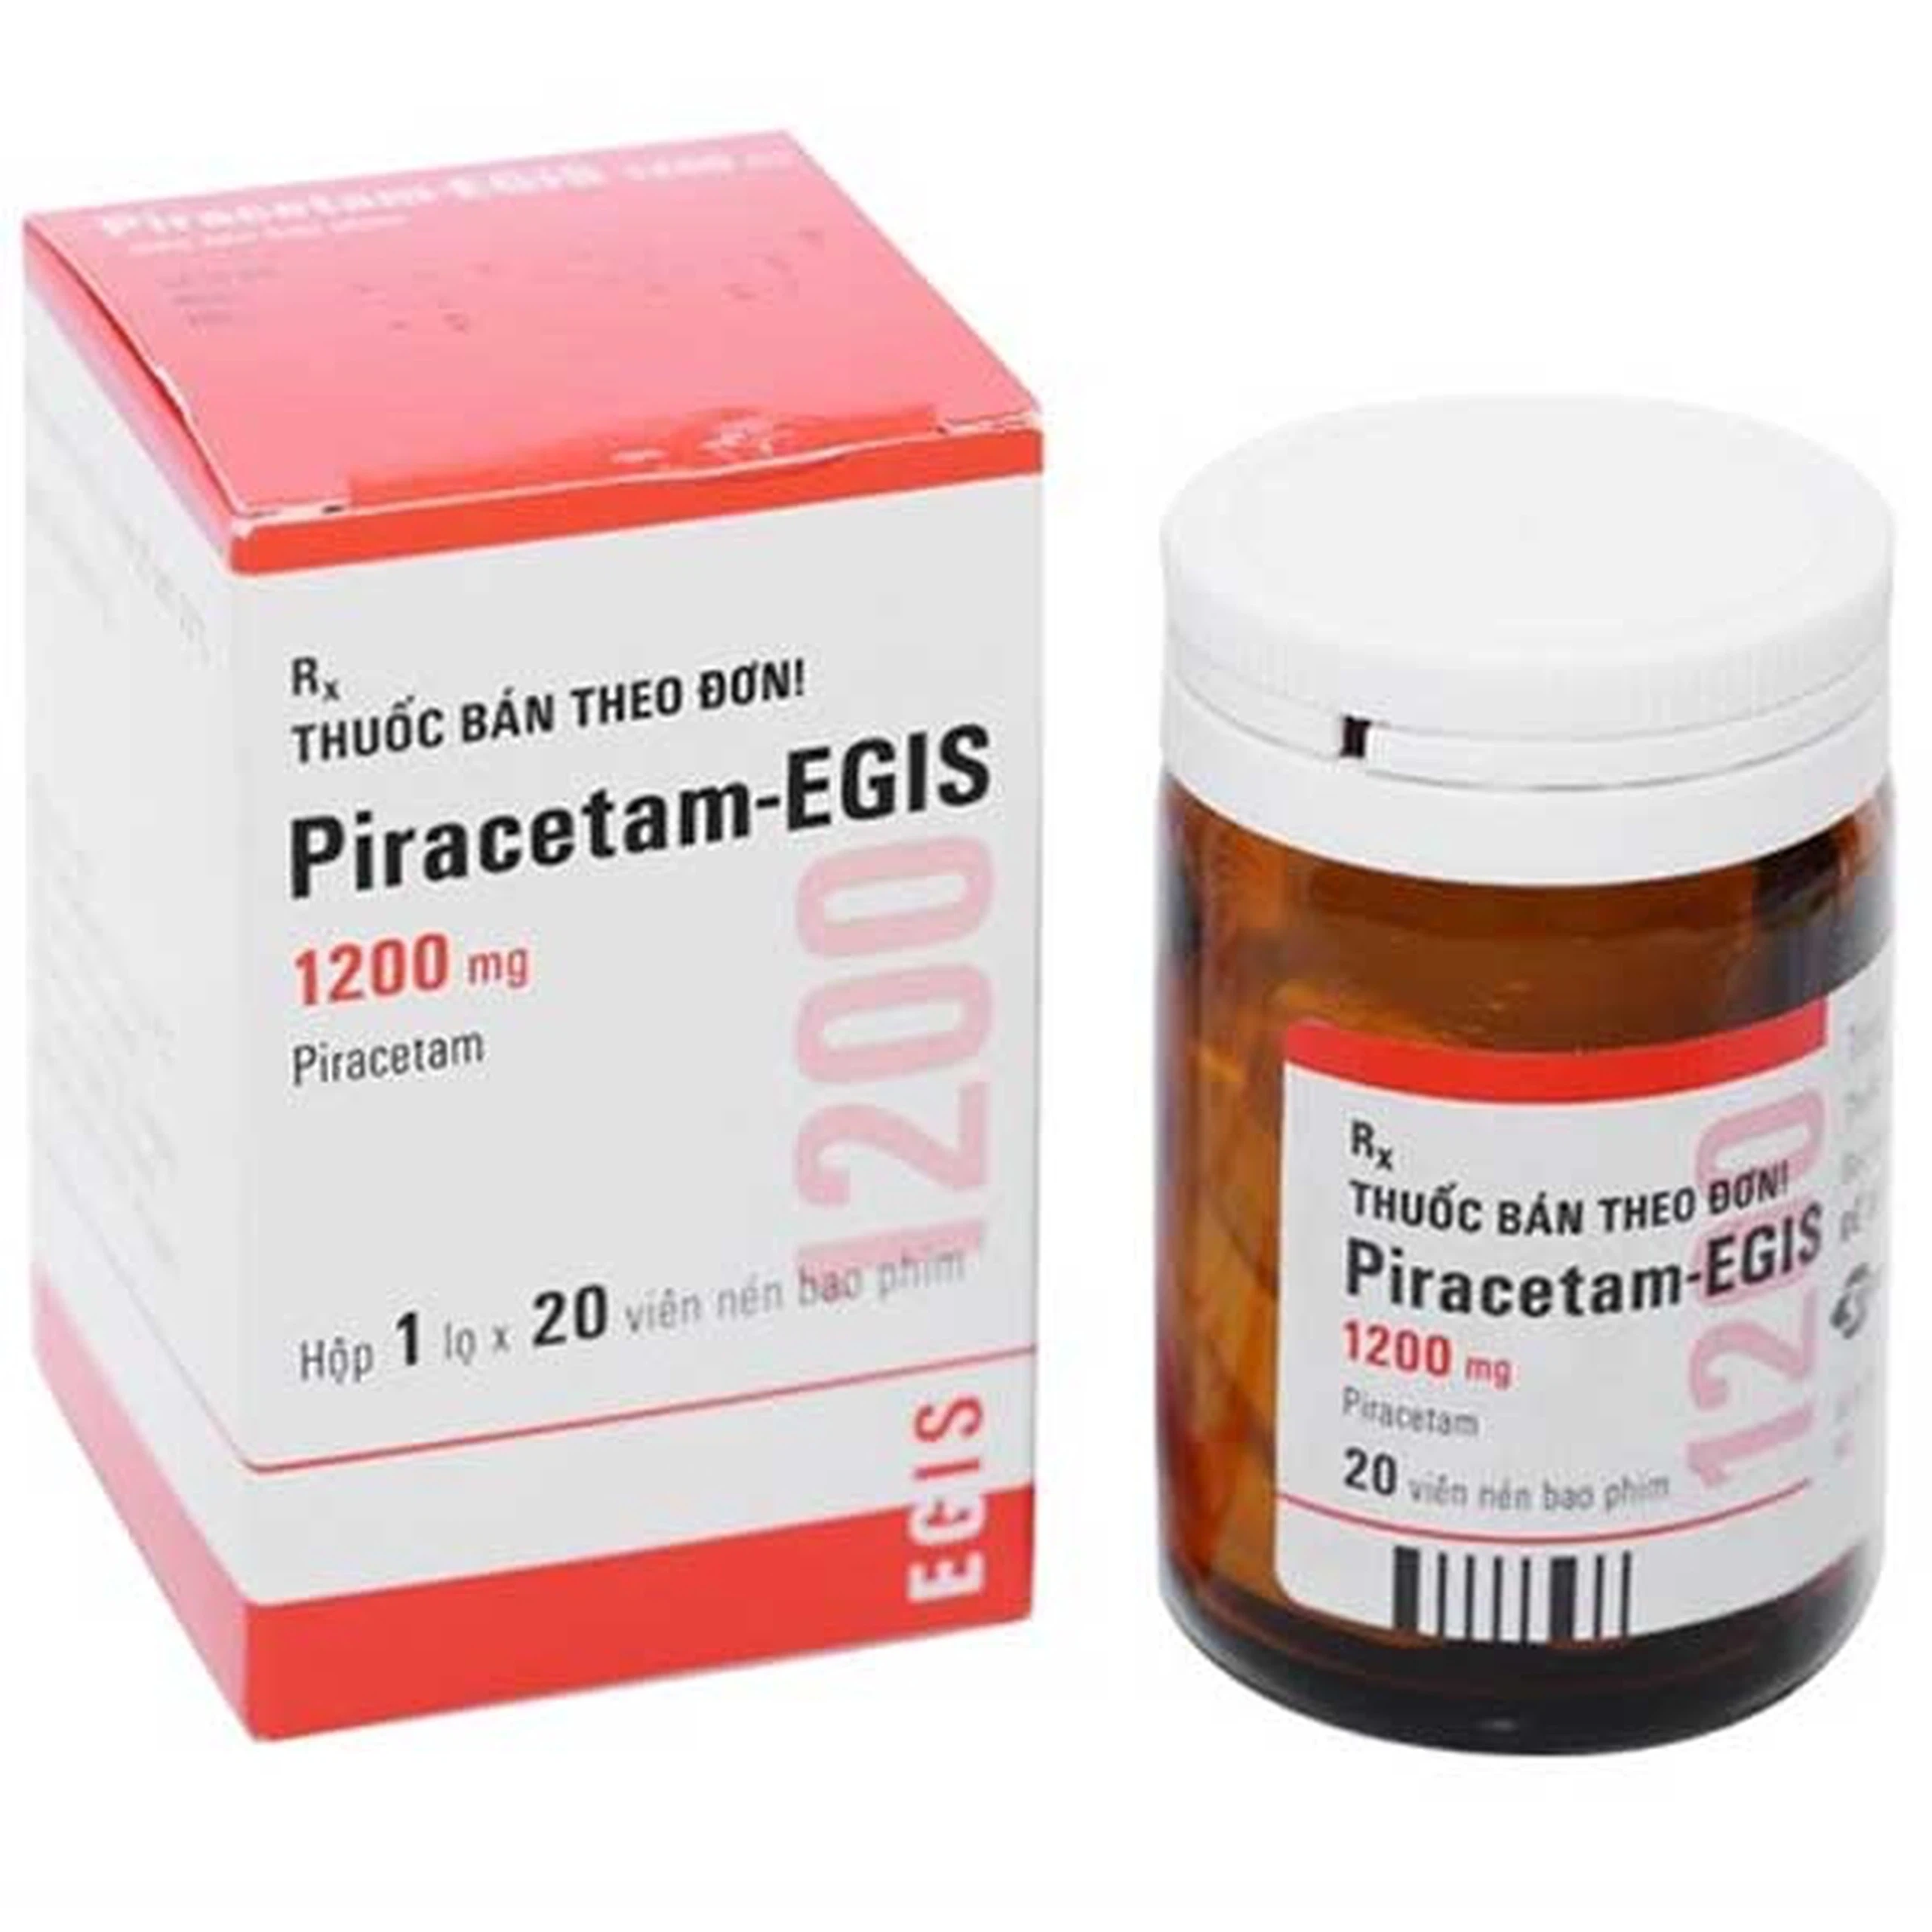 Thuốc Piracetam-EGIS 1200mg điều trị hội chứng tâm thần thực thể, chứng giật rung cơ (20 viên)